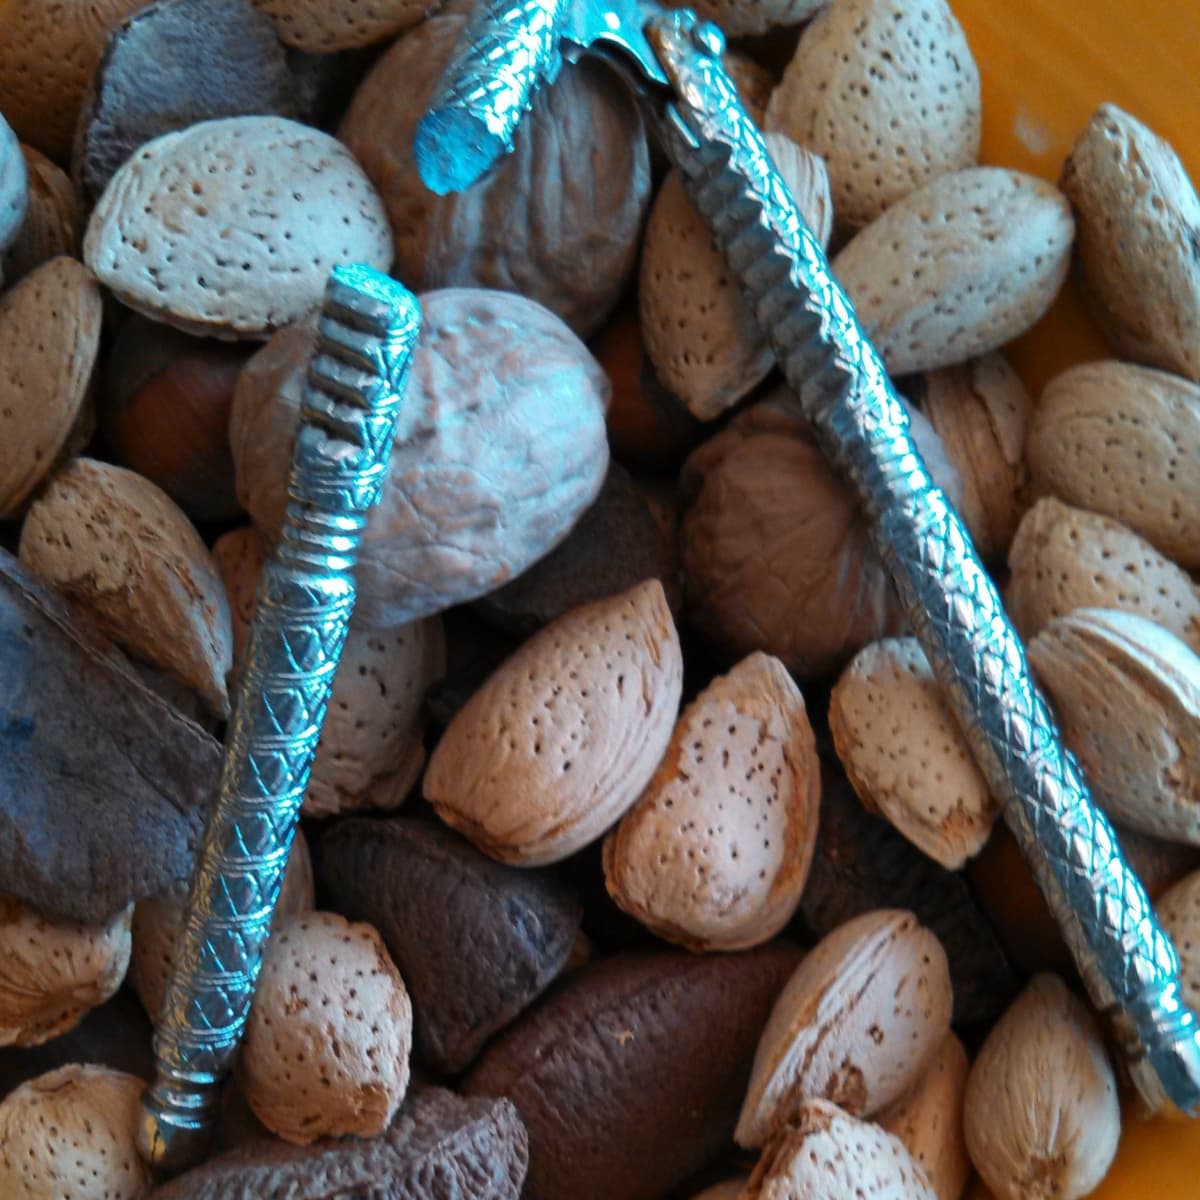 Nutcracker: What Is the Best Nutcracker for Pecans, Walnuts